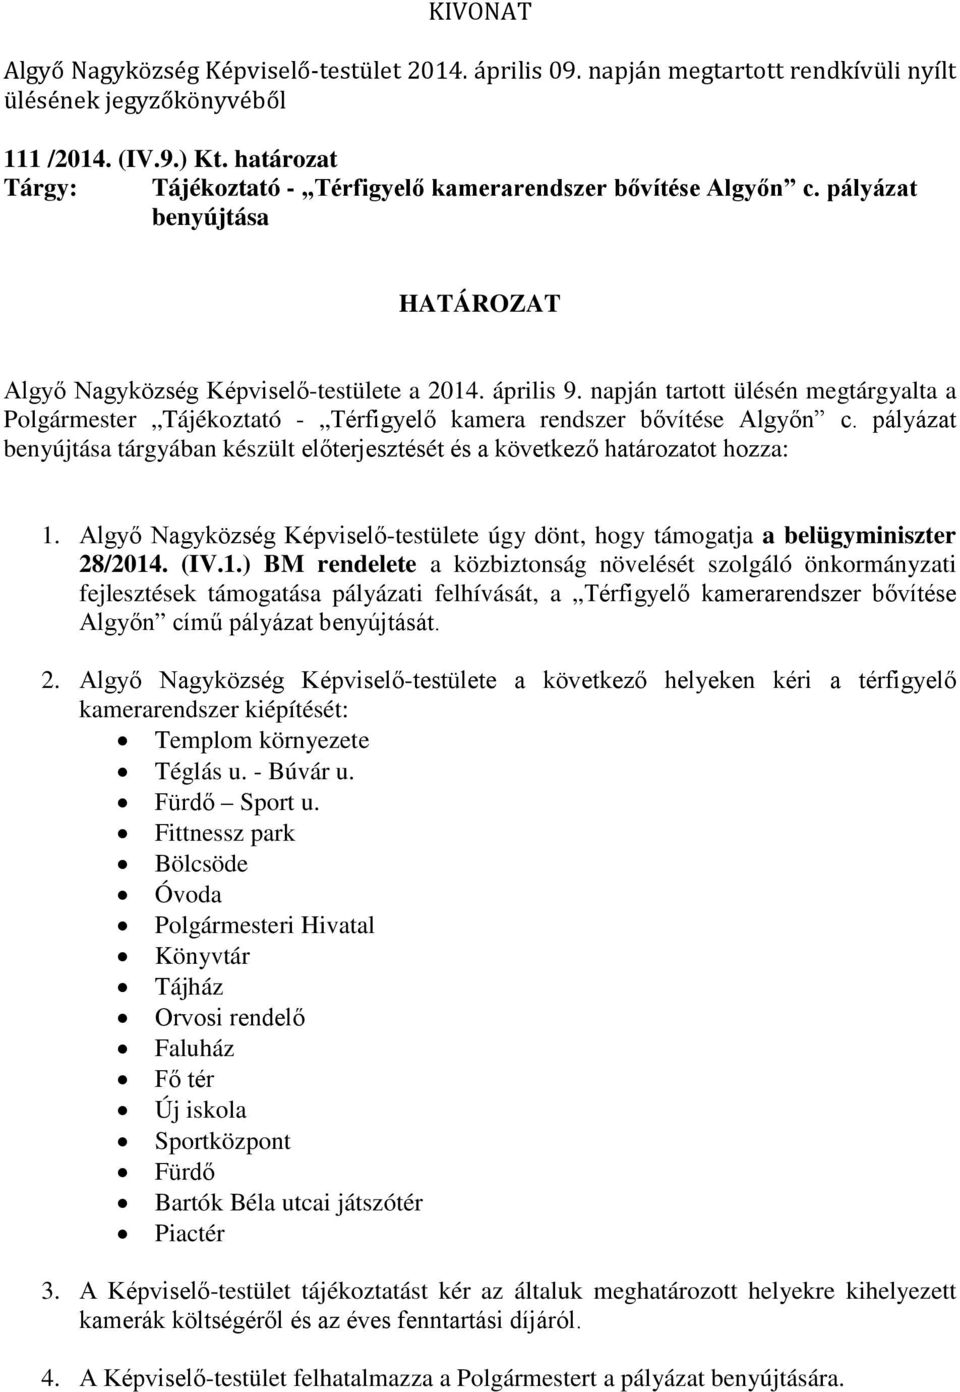 Algyő Nagyközség Képviselő-testülete úgy dönt, hogy támogatja a belügyminiszter 28/2014